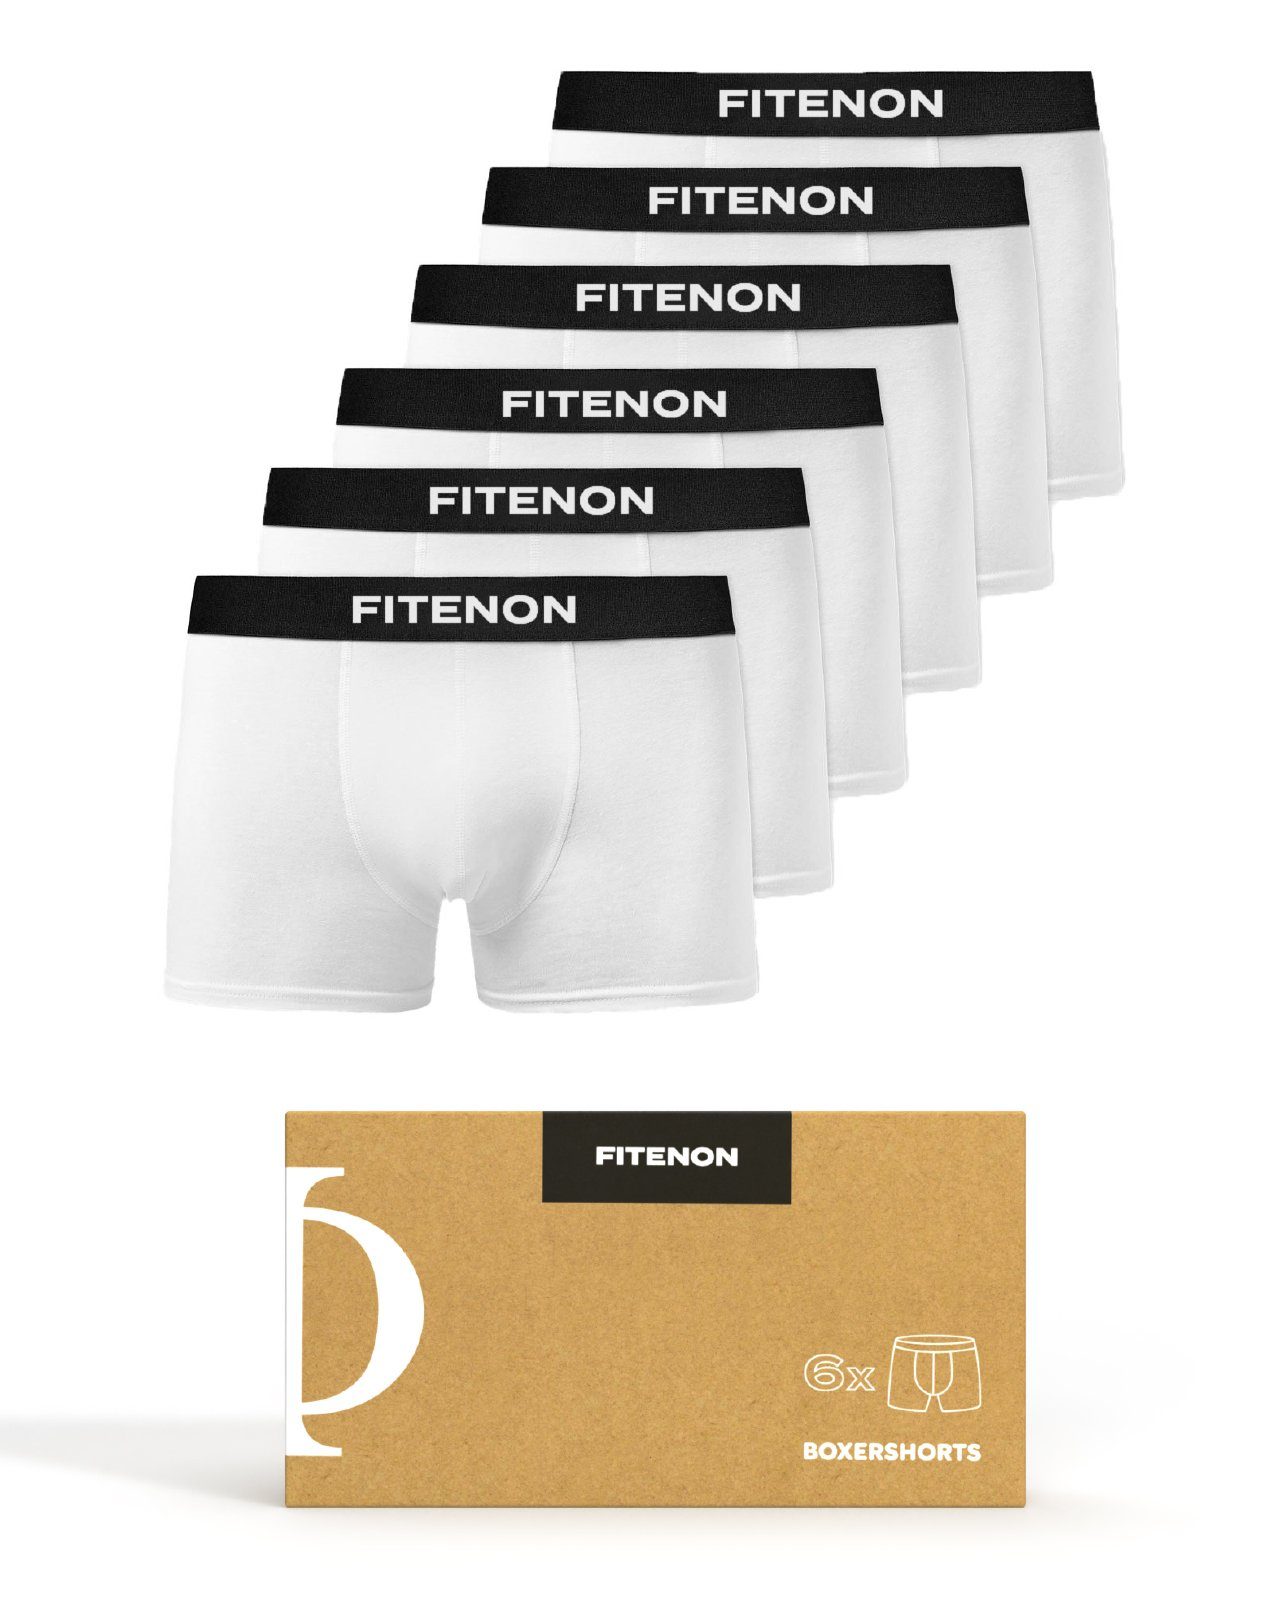 FITENON Boxershorts Herren Unterhosen, Unterwäsche, ohne kratzenden Zettel, Baumwolle (6 er Set) mit Logo-Elastikbund 6x Weiß | Boxer anliegend